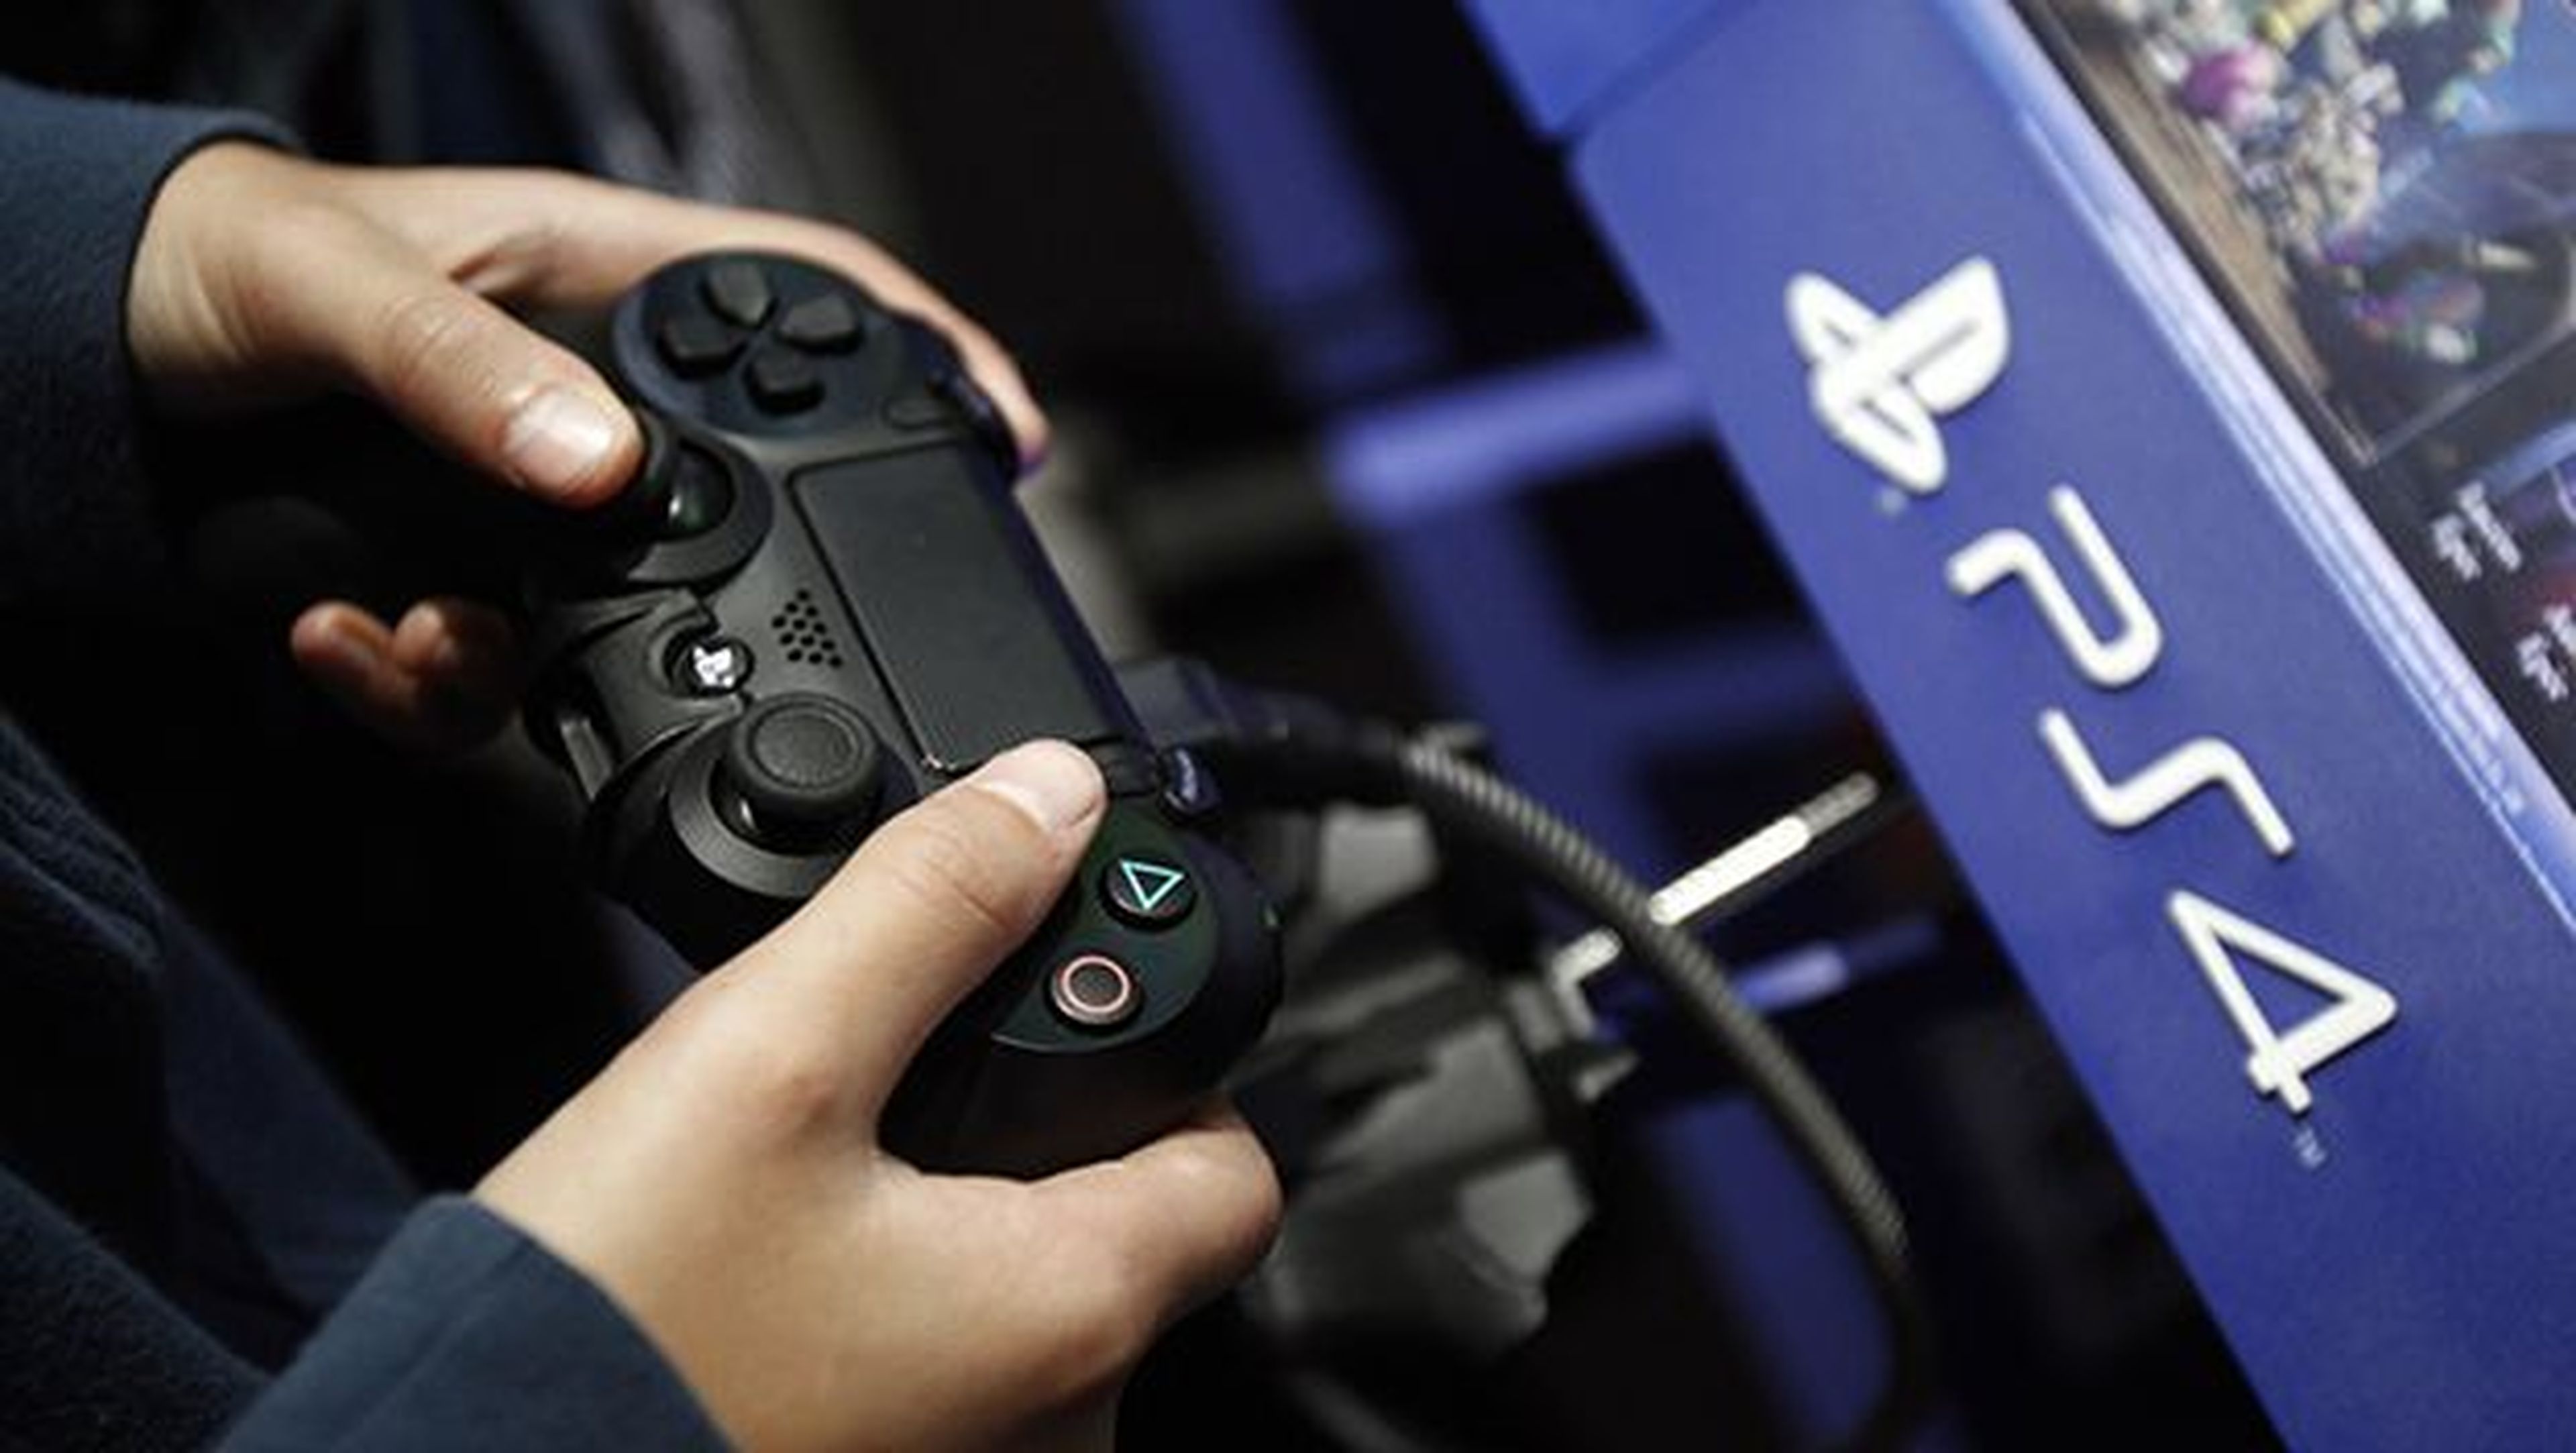 Juegos de PS4 en oferta por menos de 20€: Call of Duty y más